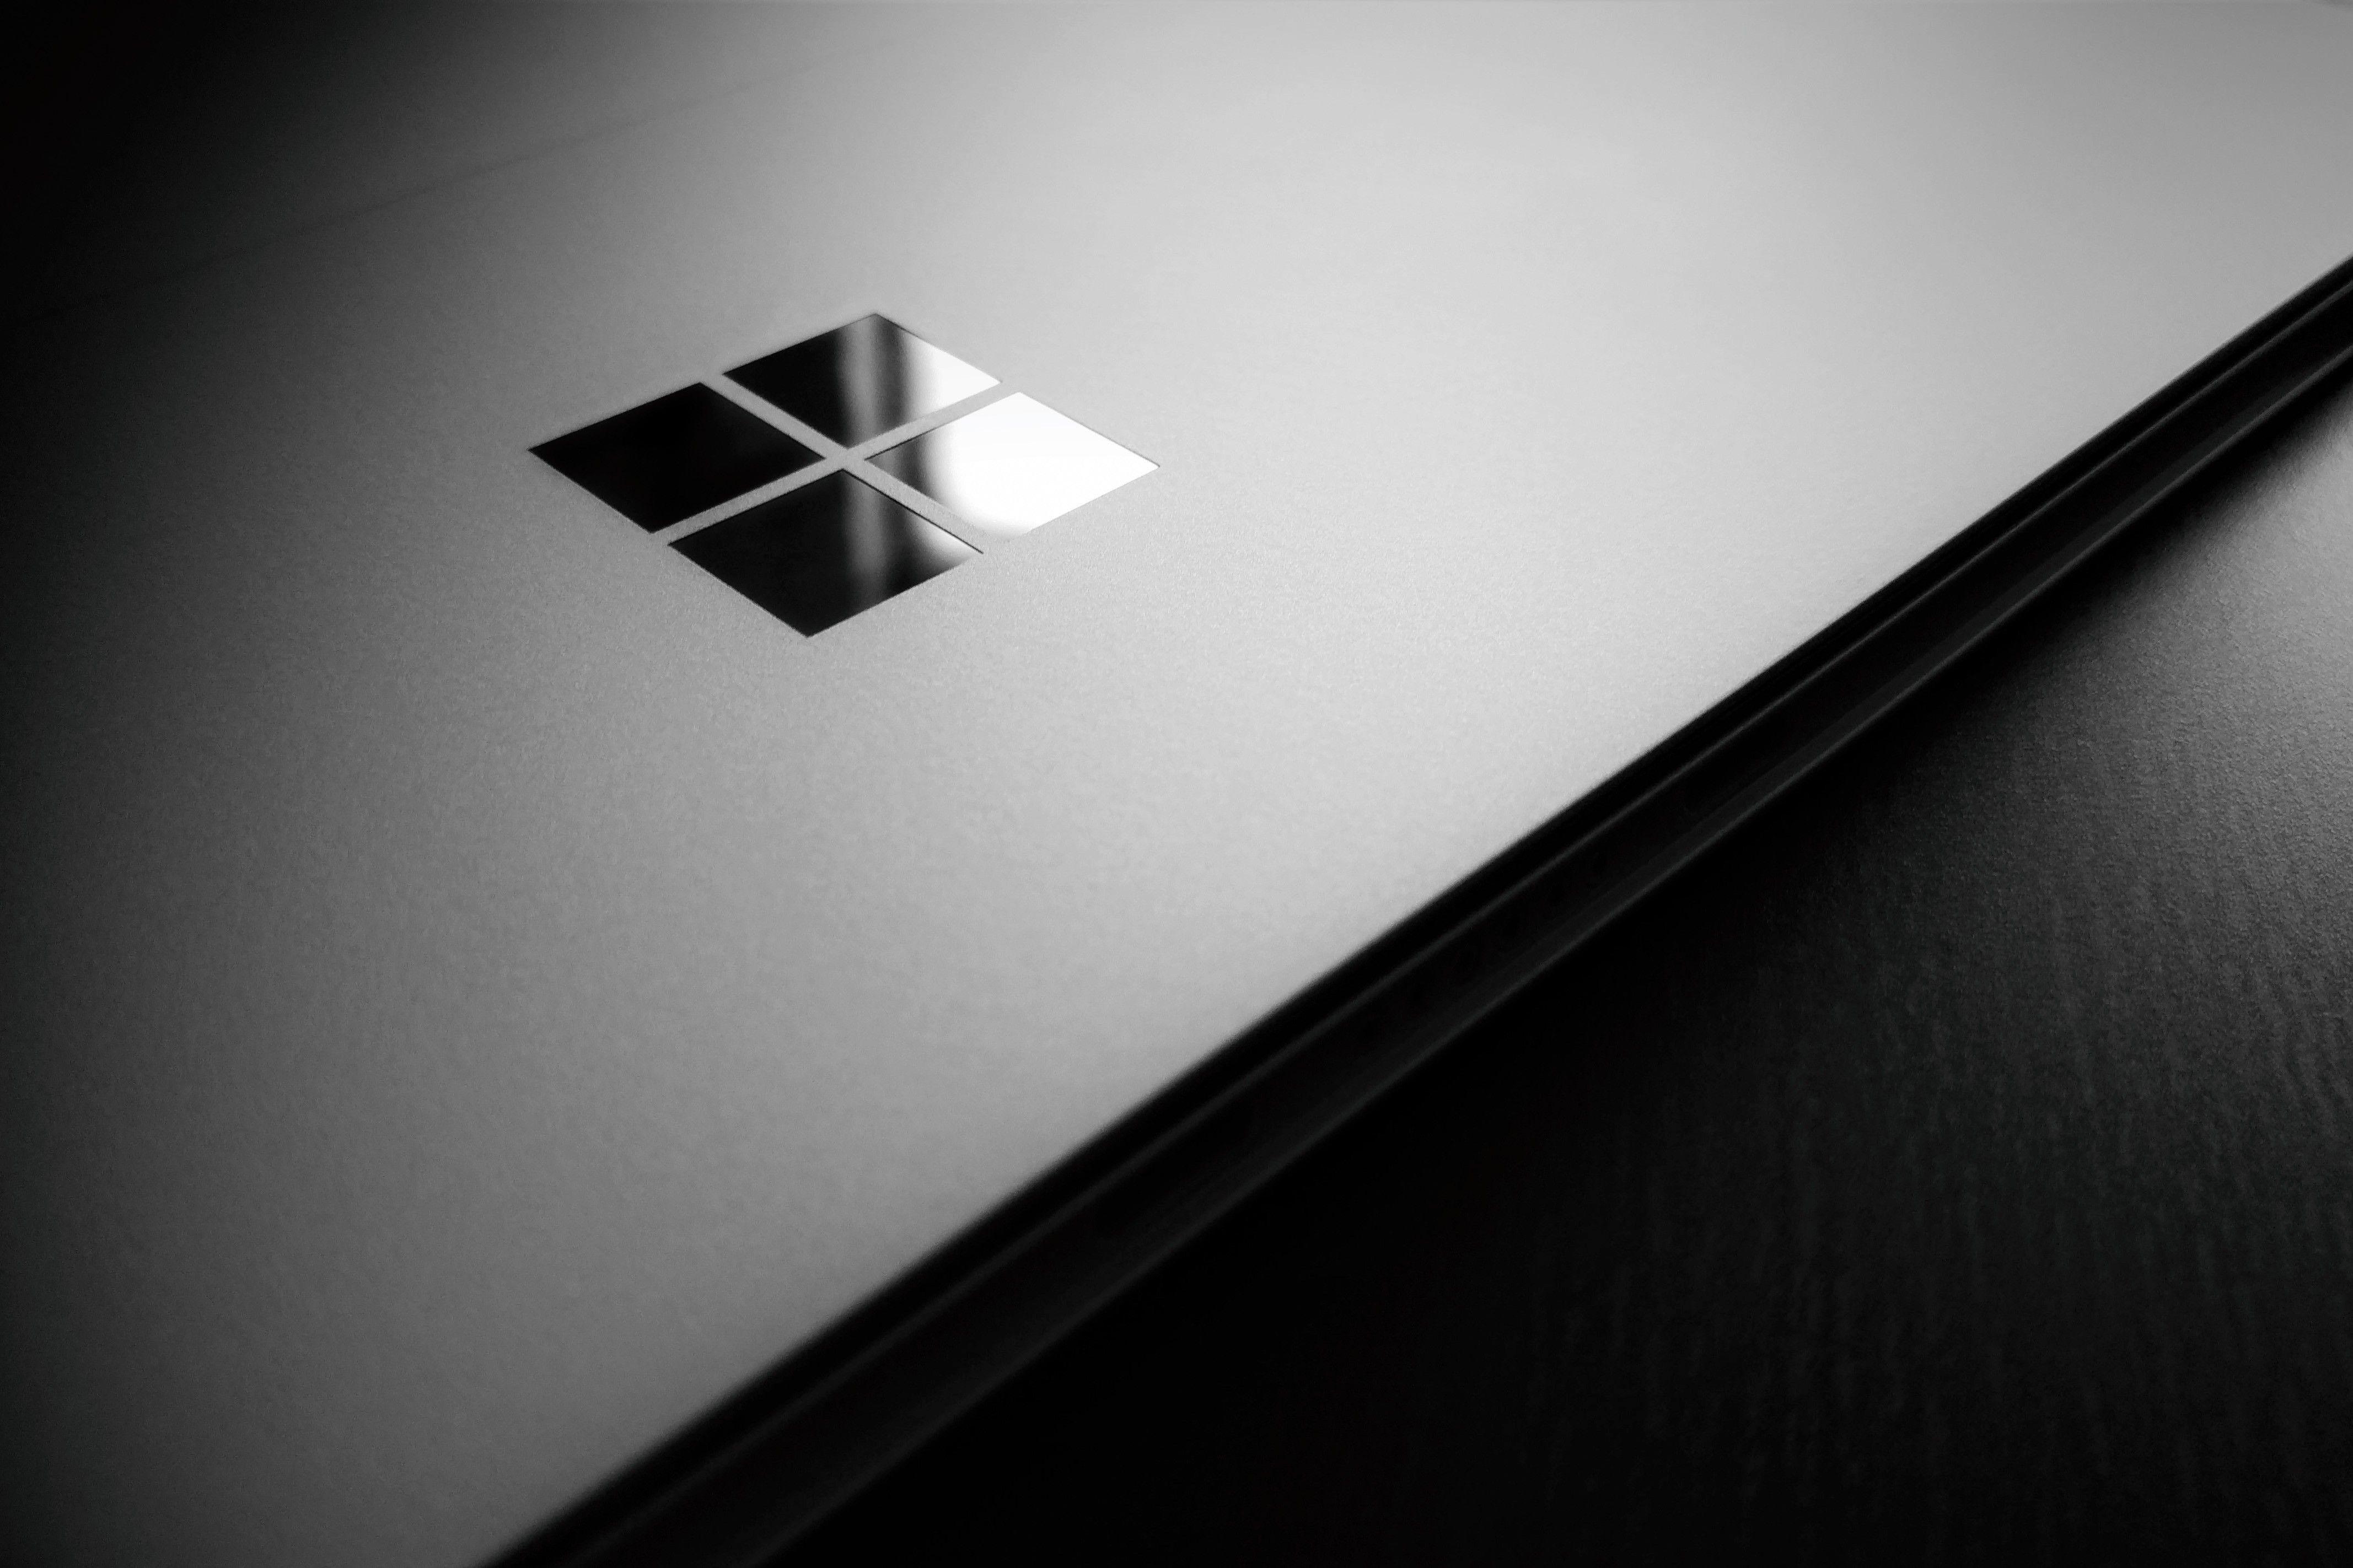 Microsoft Surface Logo - Wallpaper : wooden surface, logo, circle, laptop, Microsoft Windows